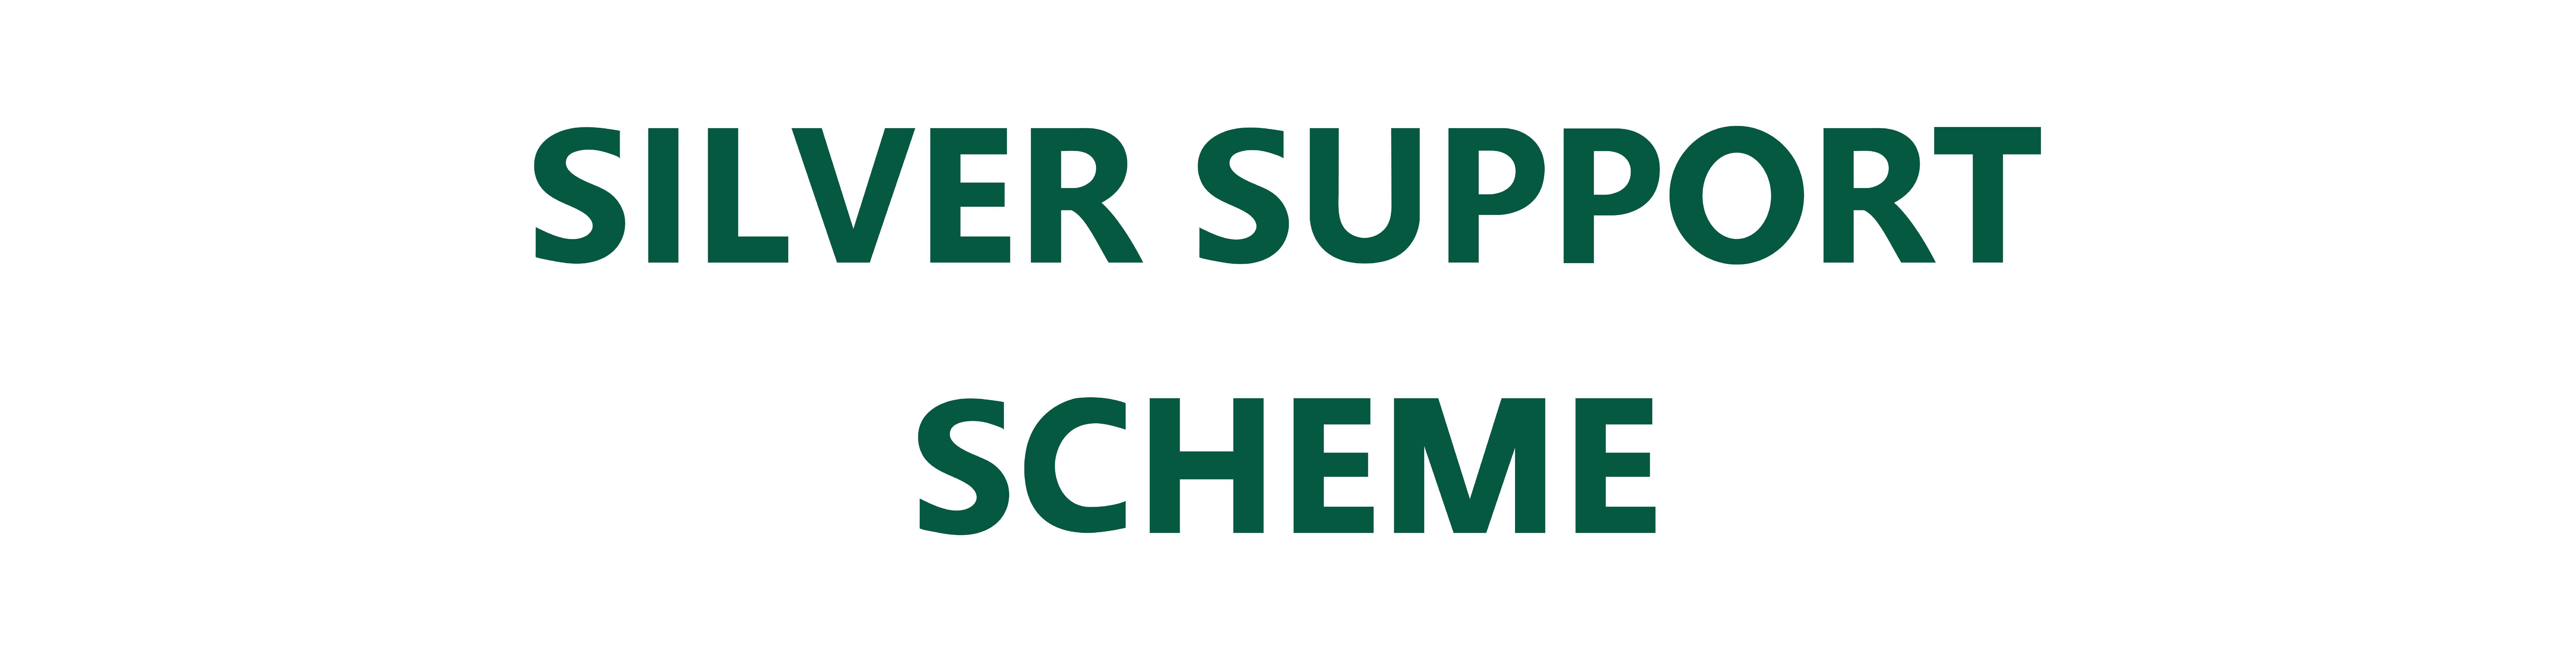 Silver Support Scheme Logo